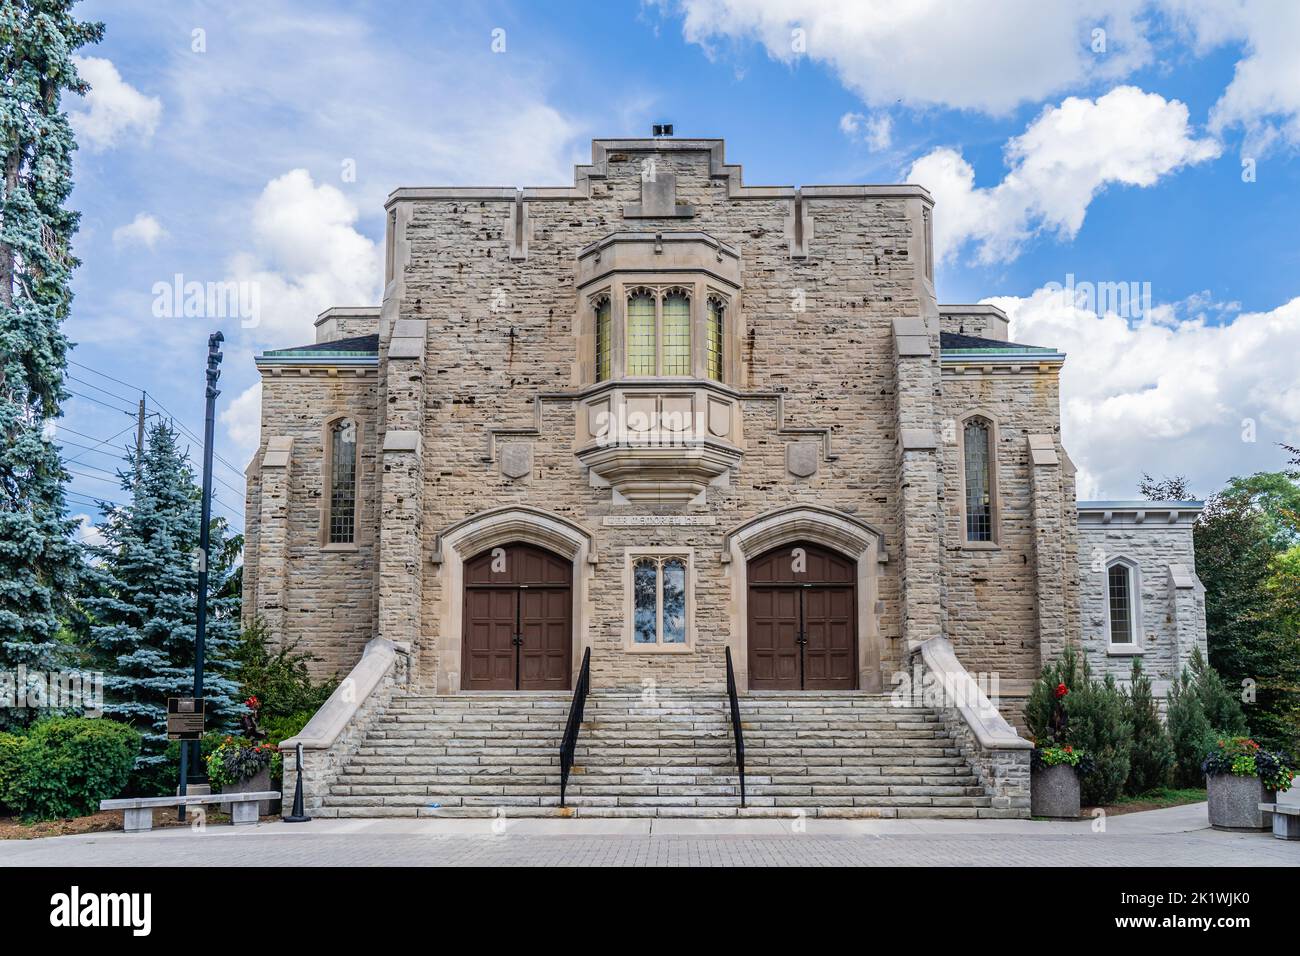 War Memorial Hall, Guelph, Ontario, Canada, construit en 1924, Ce théâtre de conférence en pierre calcaire rend hommage aux étudiants décédés lors de la première Guerre mondiale Banque D'Images